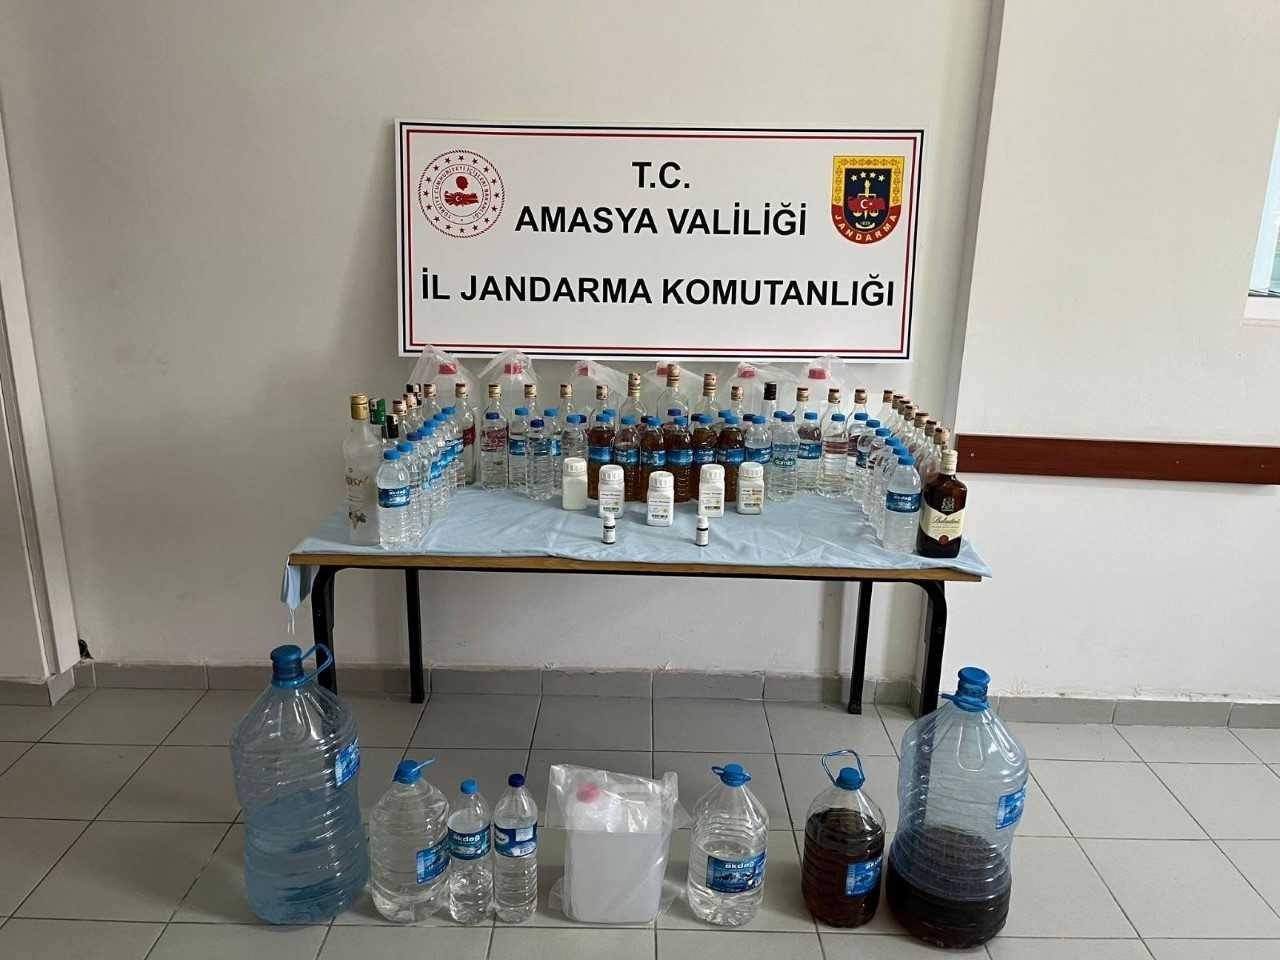 Amasya’da jandarmanın düzenlediği operasyonda yasa dışı alkol üreten kişilere müdahale yapıldı